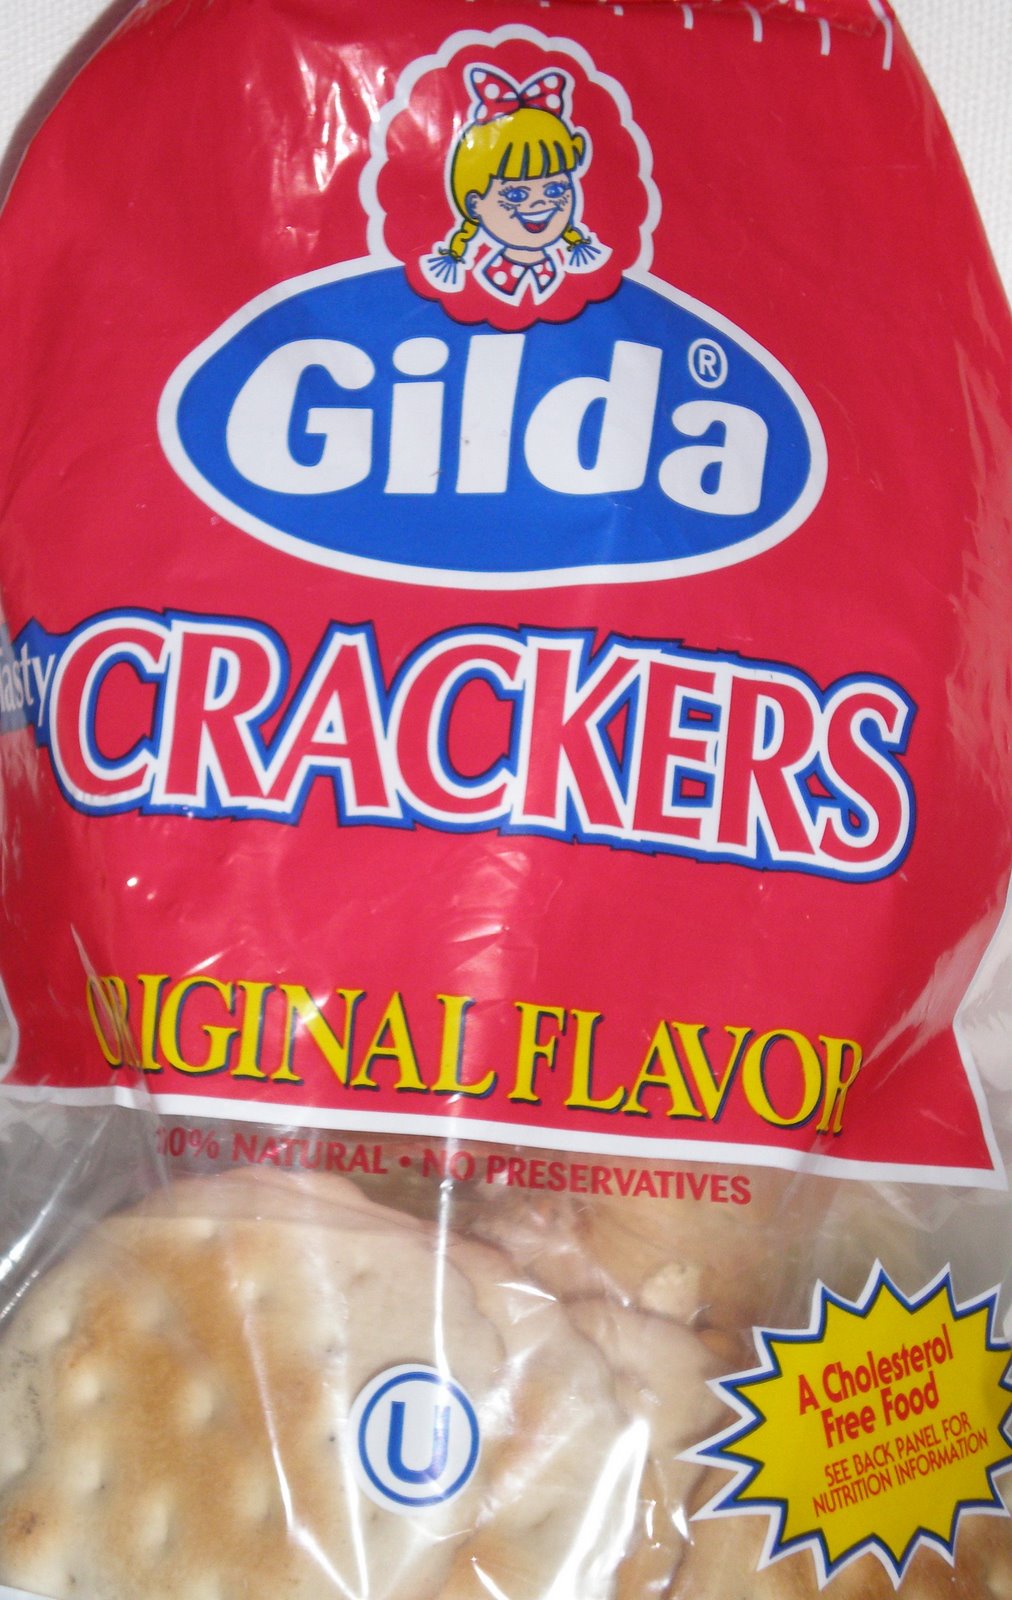 [gilda_crackers_brandlandusa.JPG]